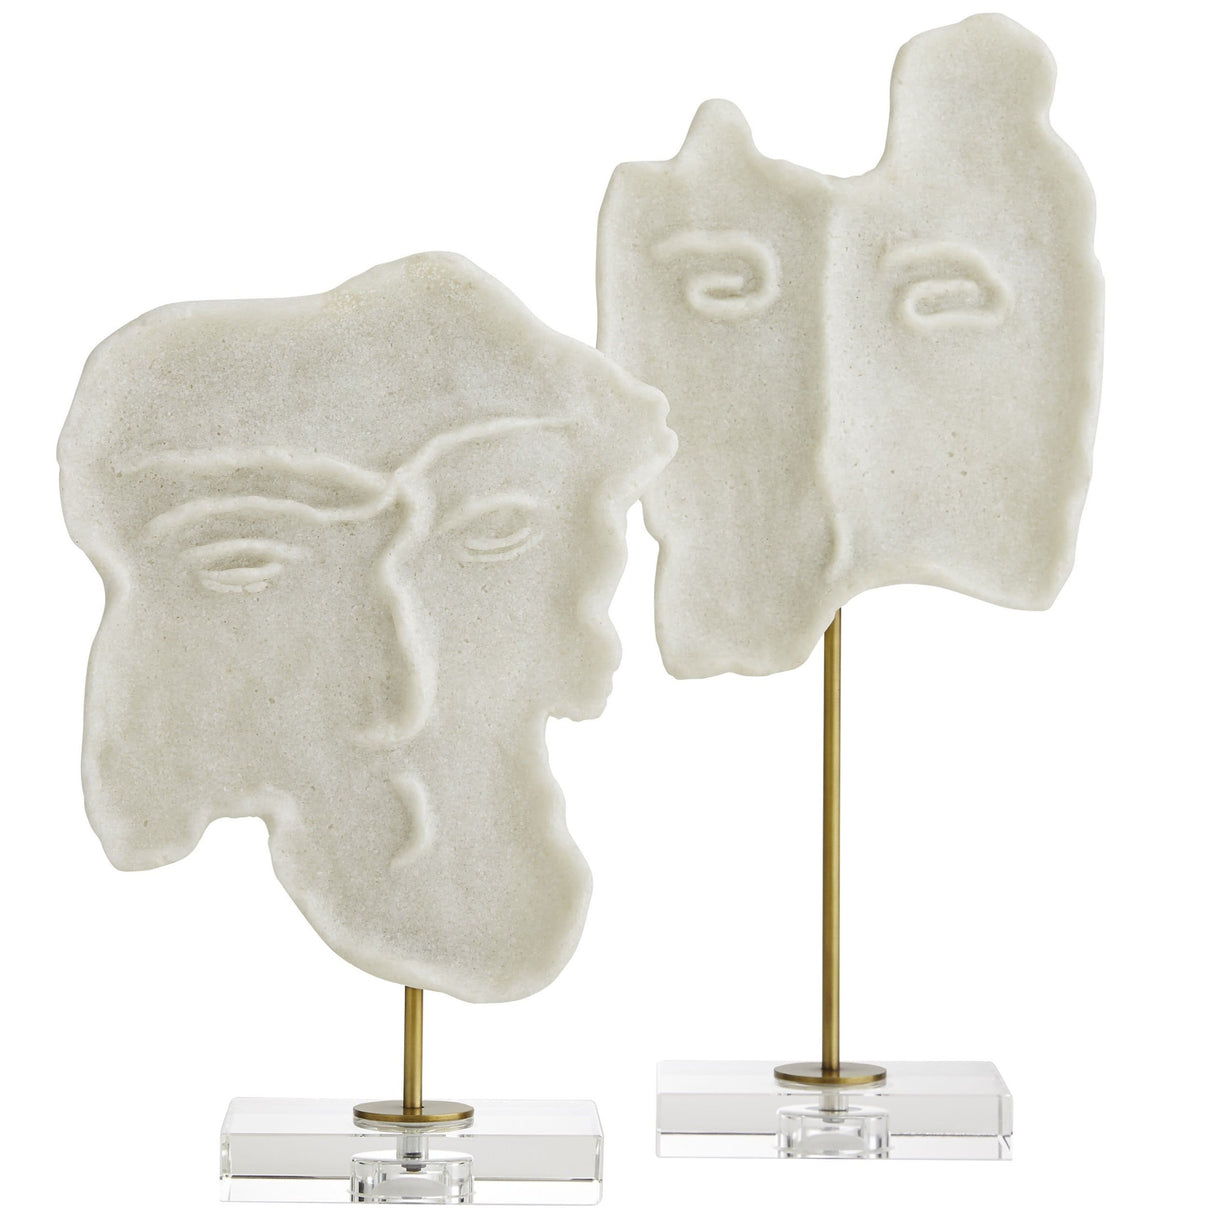 Arteriors David Sculptures - Set of 2 Pillow & Decor arteriors-9235 796505389527